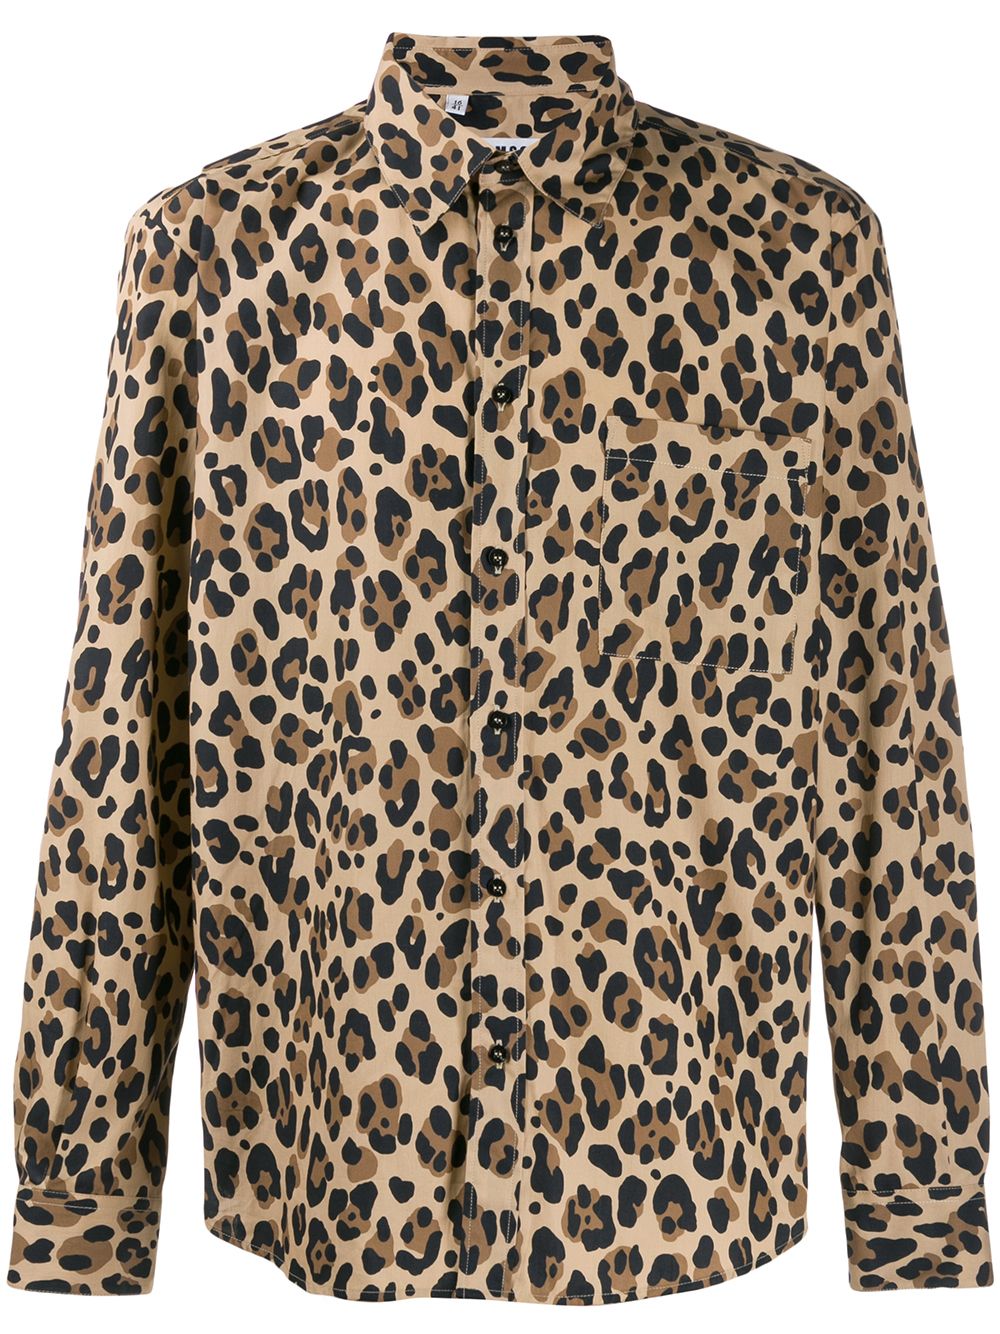 фото Msgm рубашка с леопардовым принтом